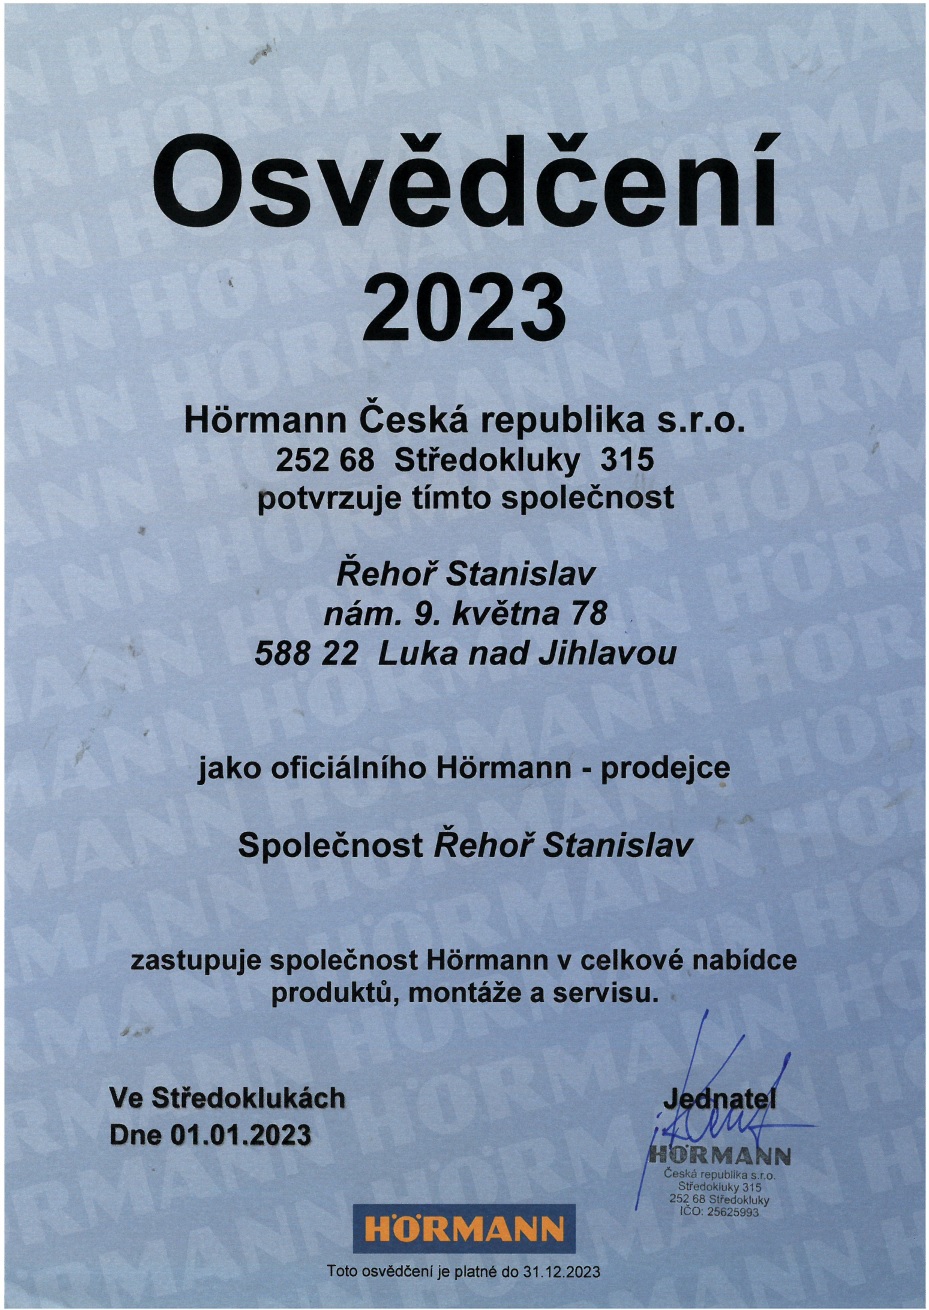 osvedceni hormann 2023